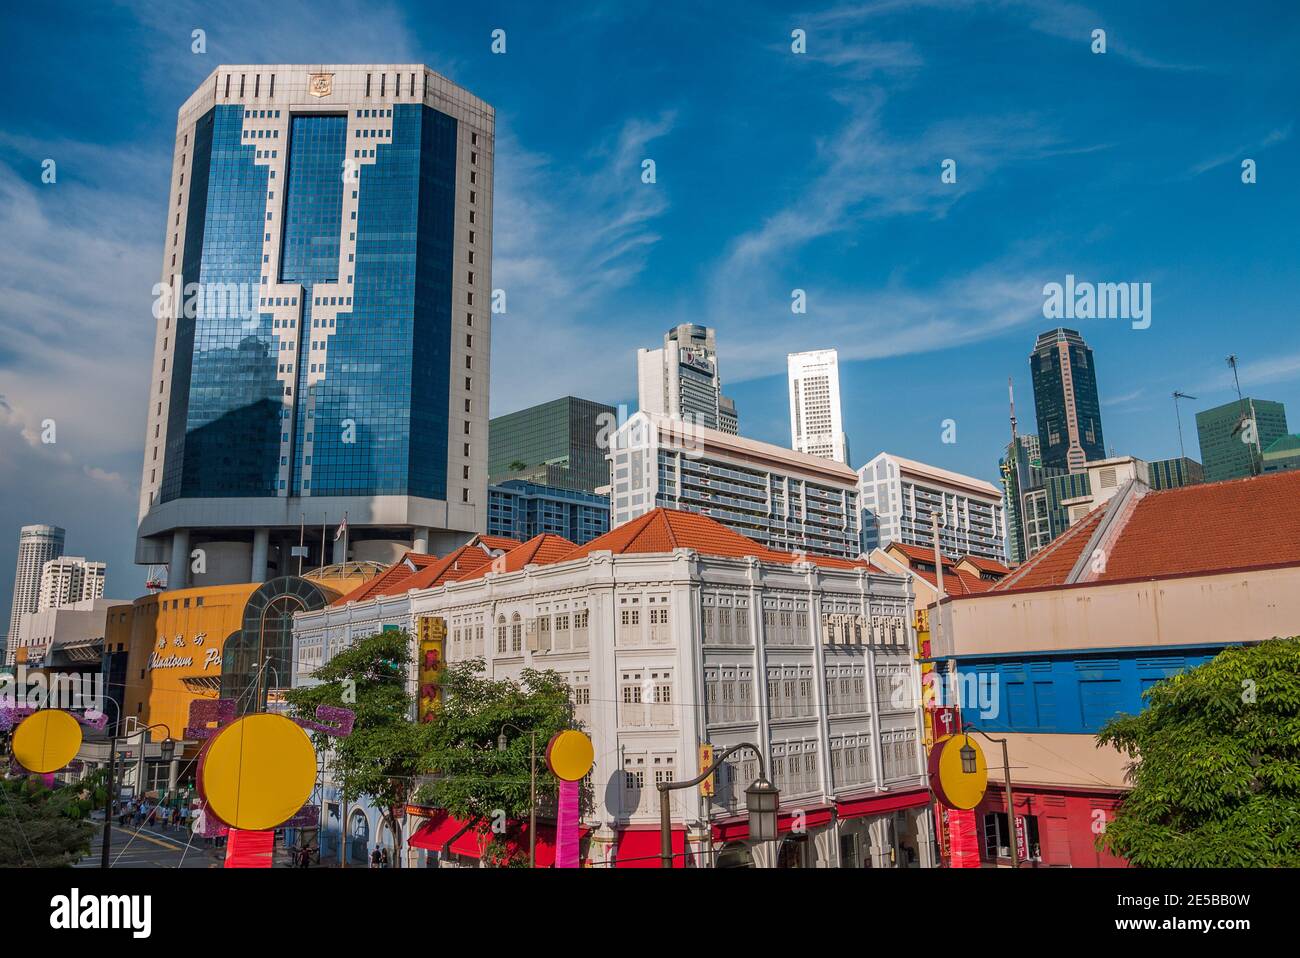 Singapur ist ein souveräner Inselstadtstaat in Südostasien, vor der Malaiischen Halbinsel, gegründet 1819 von Sir Stamford Raffles als Handelsposten. Stockfoto